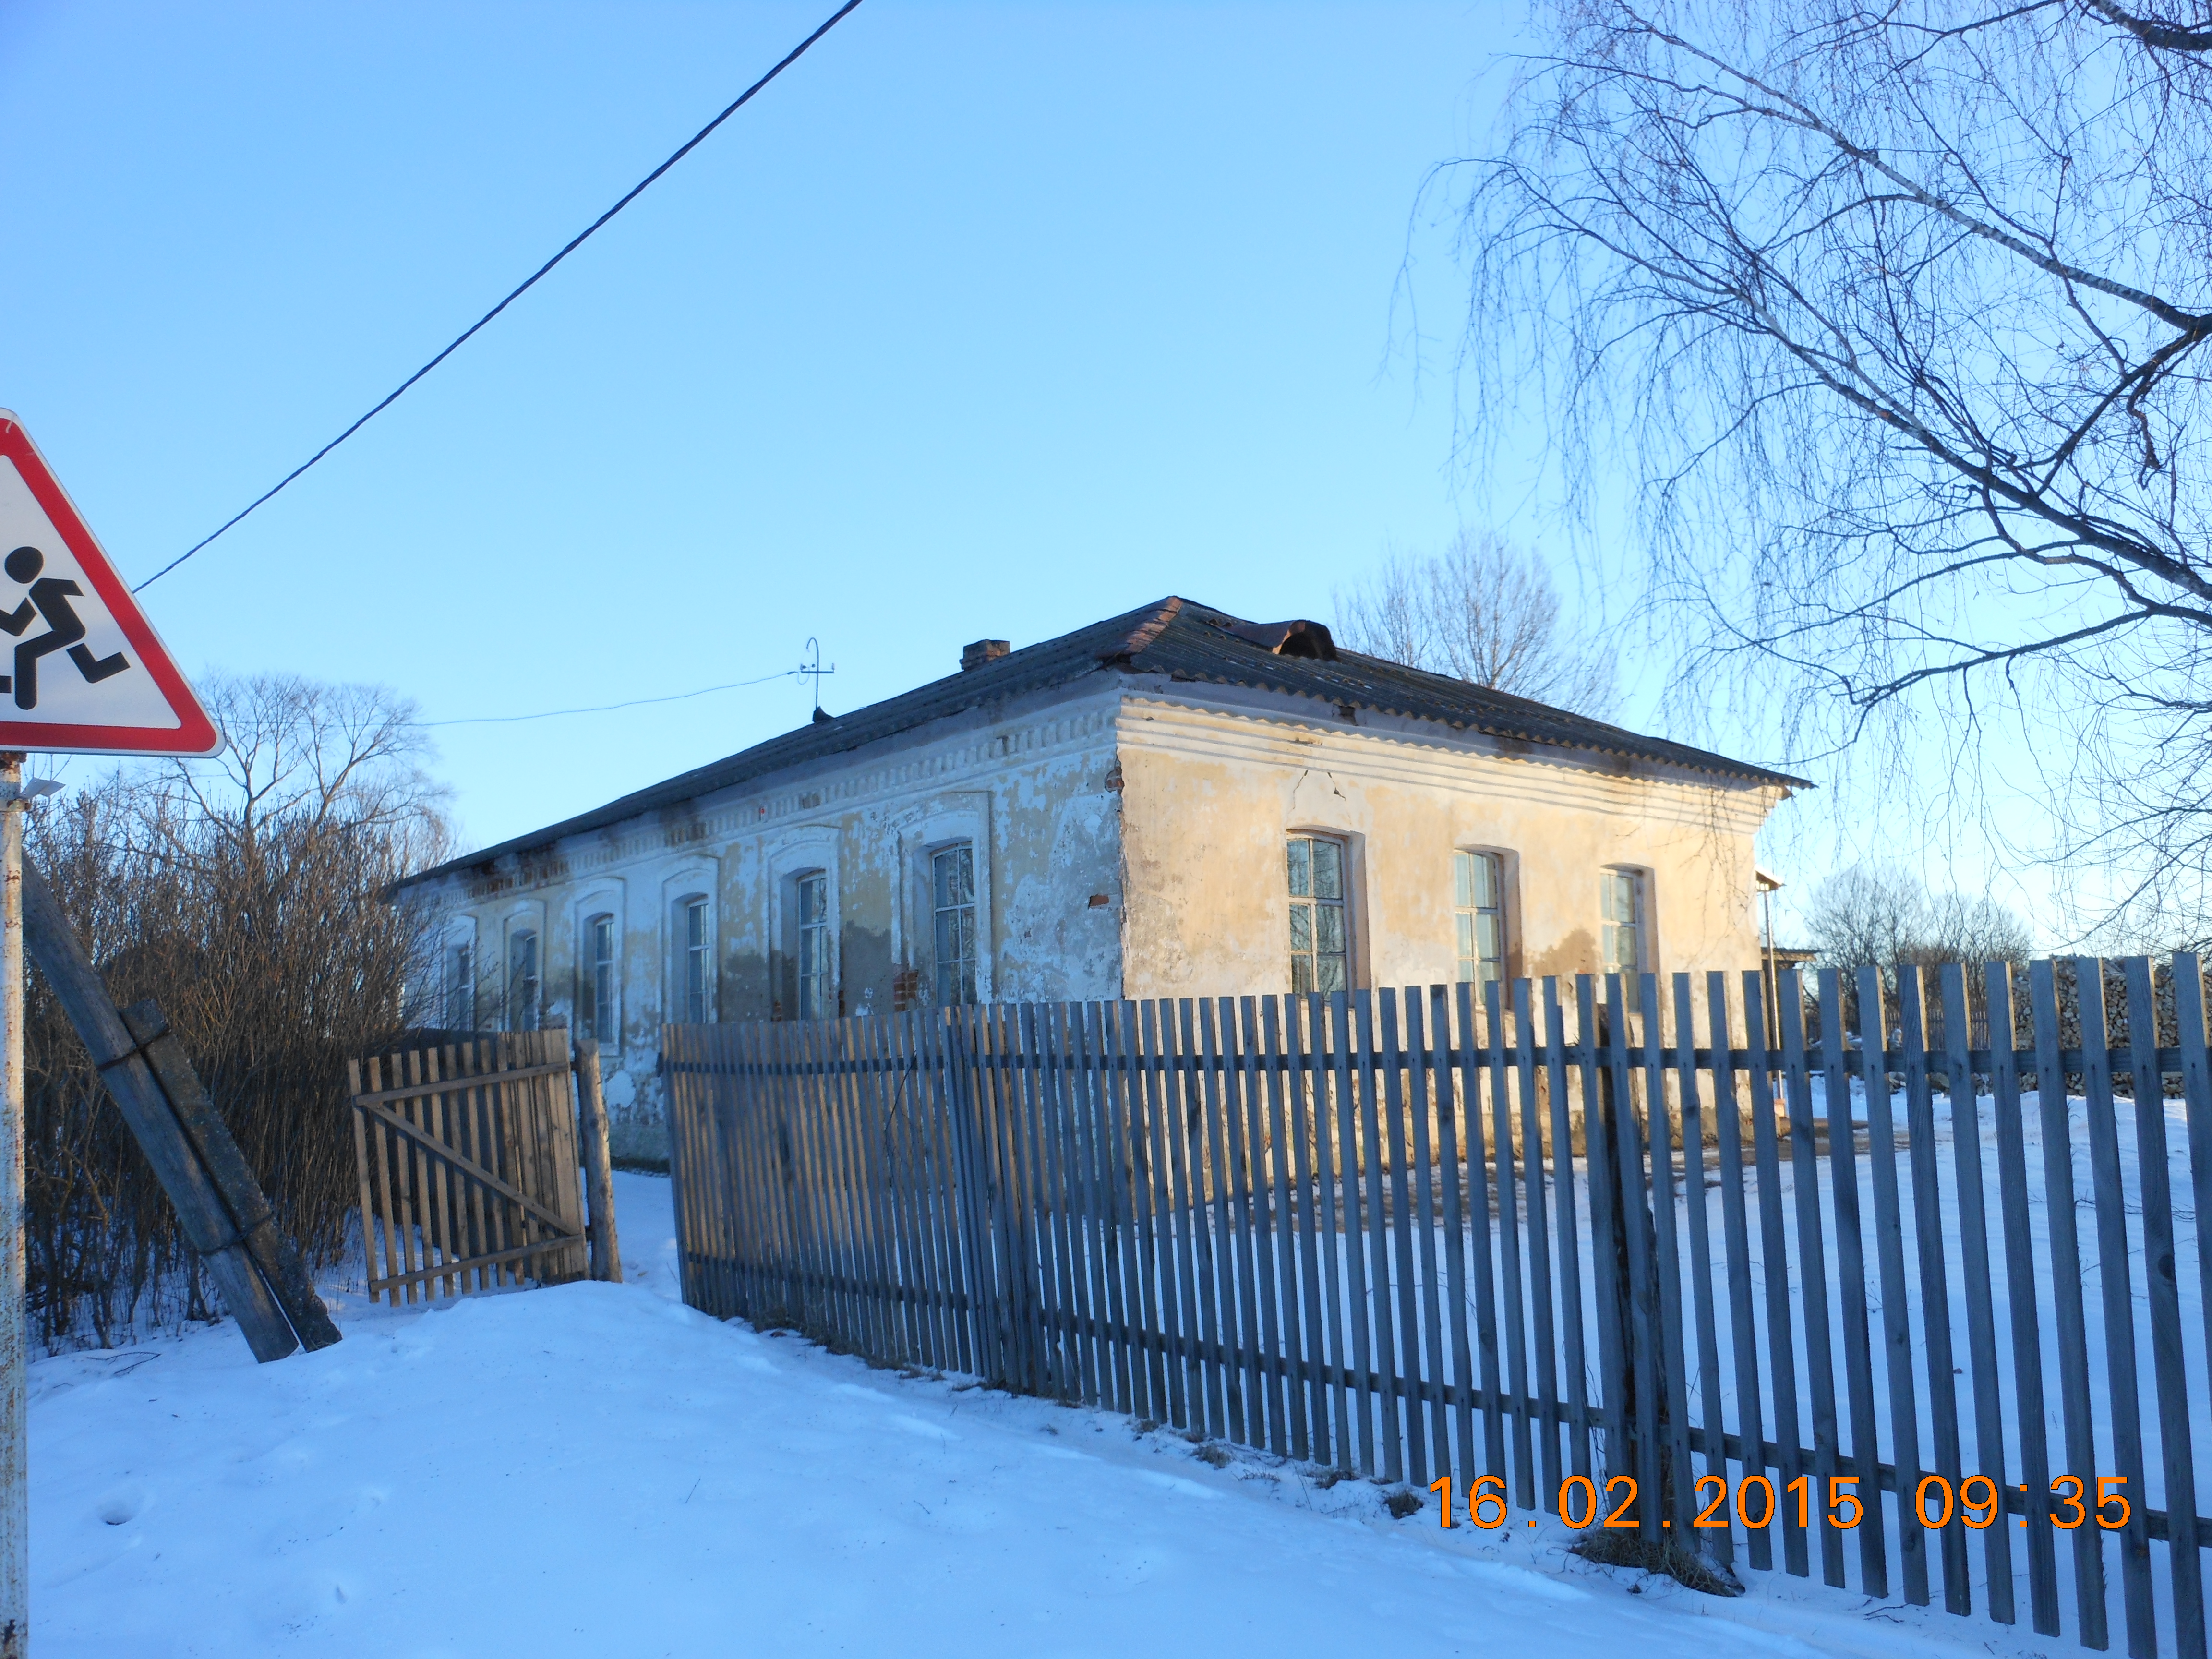 Здание школы, расположенное по адресу: д. Вешки ул. Фокина д.10.